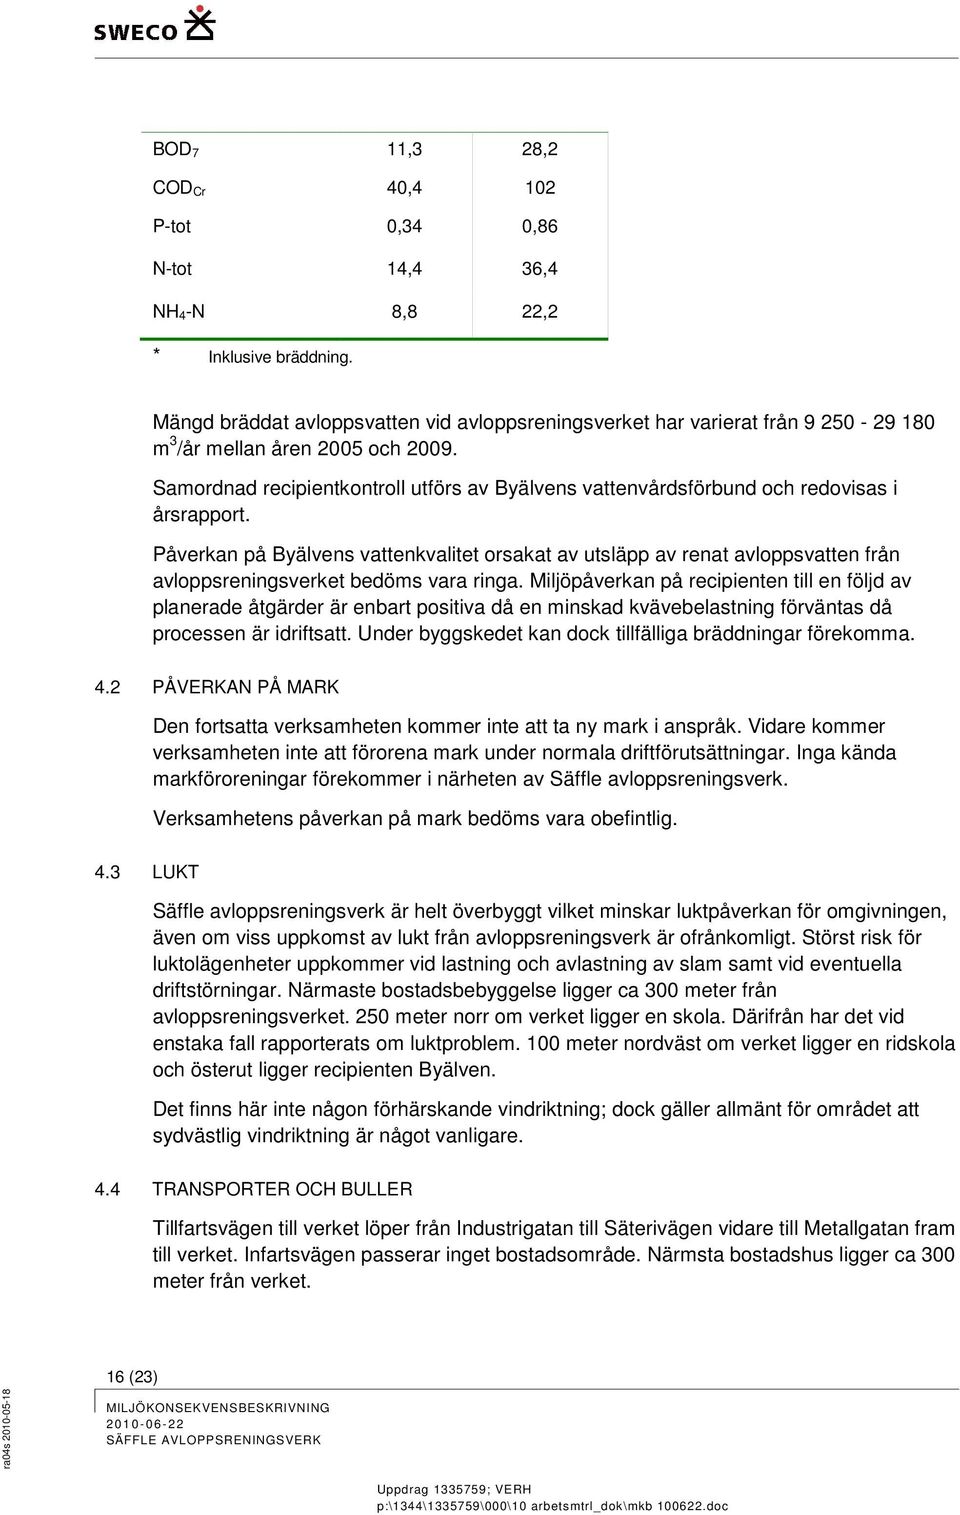 Samordnad recipientkontroll utförs av Byälvens vattenvårdsförbund och redovisas i årsrapport.